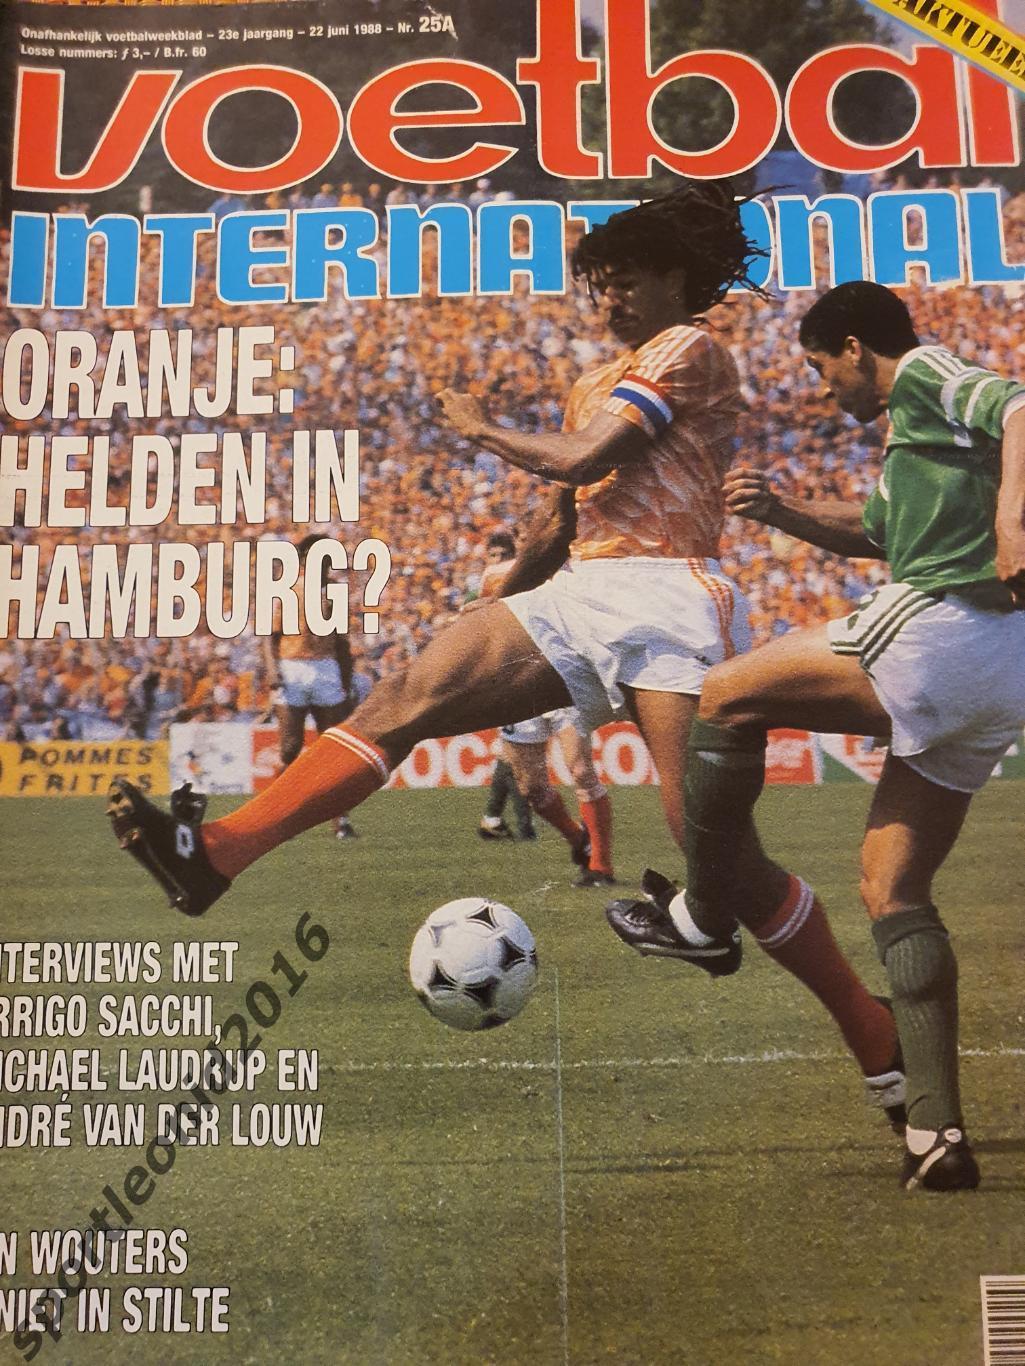 Voetbal International 1988+87.10 топ выпусков.В том числе И ВСЕ к ЧМ-88.3 7